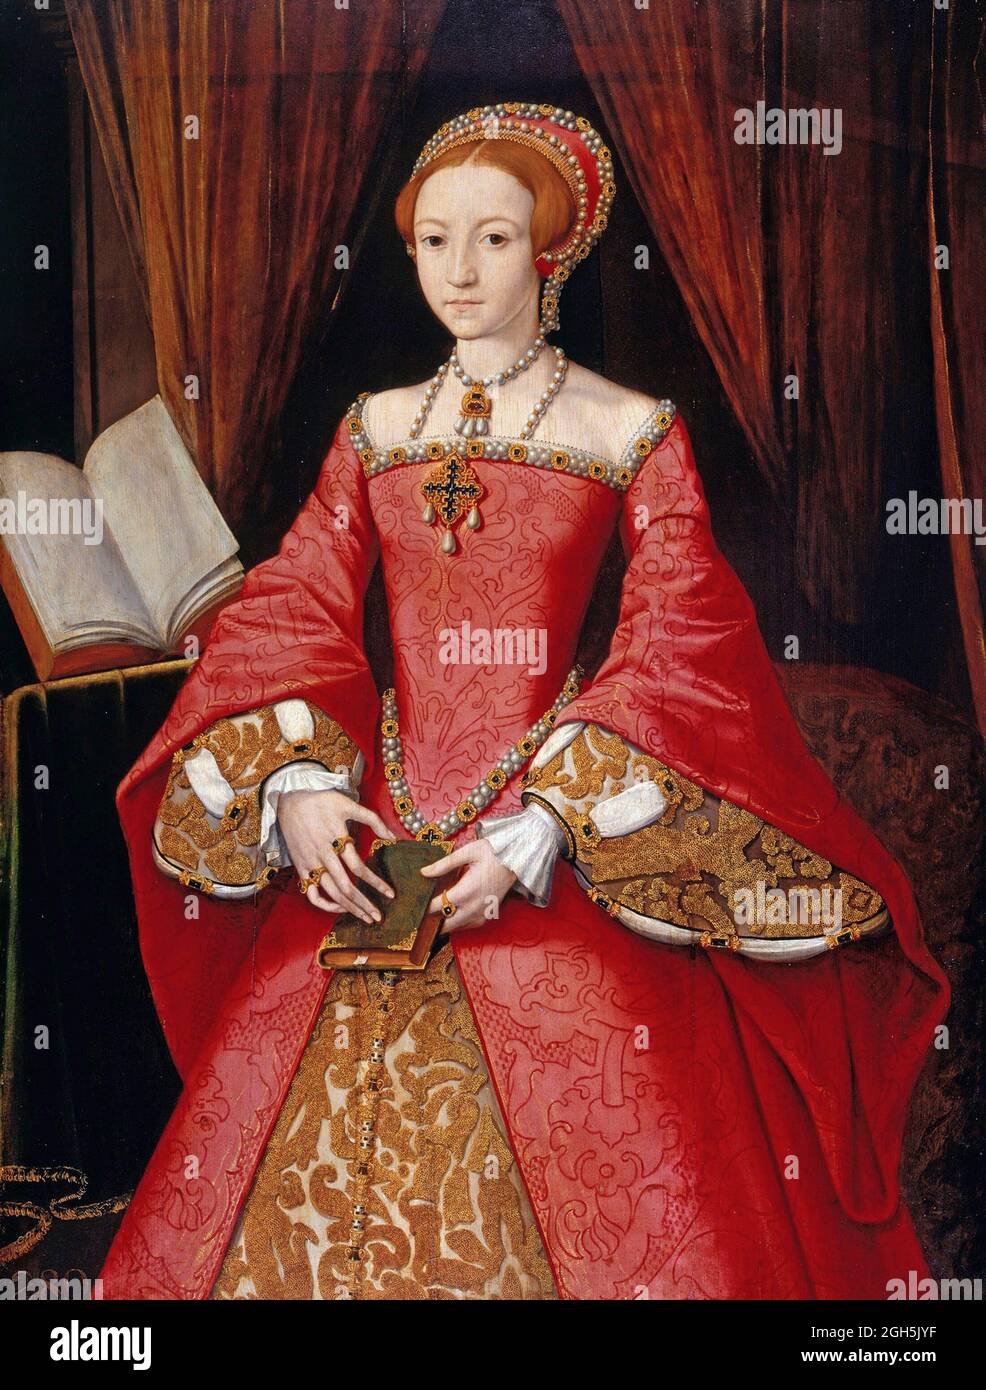 Un ritratto della principessa Elisabetta che divenne regina Elisabetta i che fu Regina d'Inghilterra dal 1558 al 1603 Foto Stock